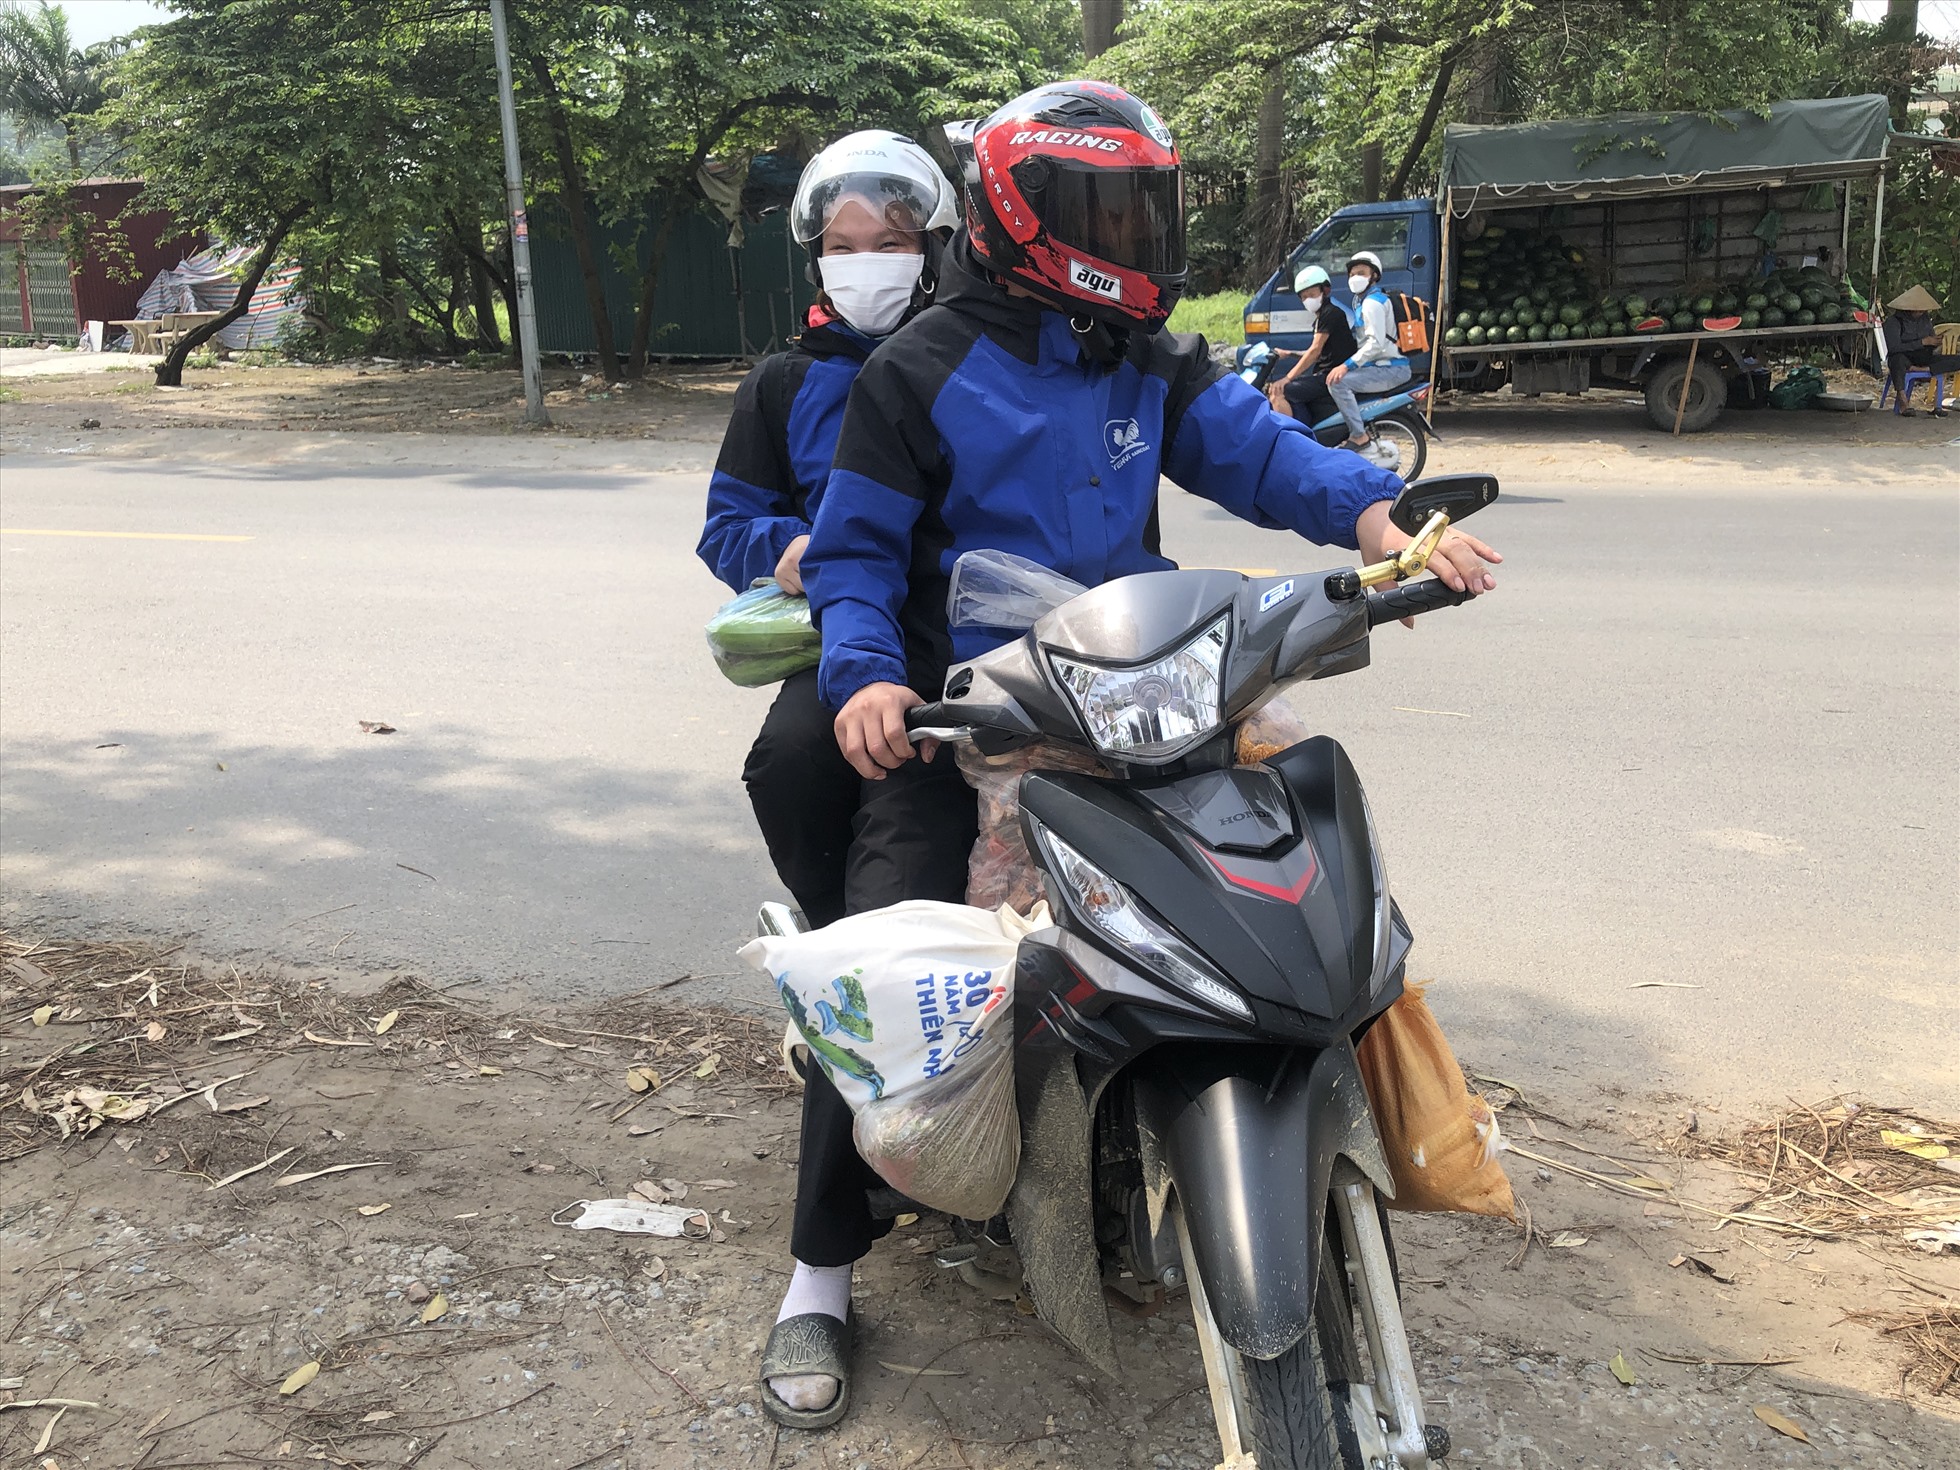 Anh Bùi Văn Quý (quê Sơn La) cùng vợ đi xe máy từ 2 giờ sáng, đến hơn 9 giờ mới có mặt tại khu vực khu công nghiệp Thăng Long (Hà Nội).  Ảnh: Bảo Hân